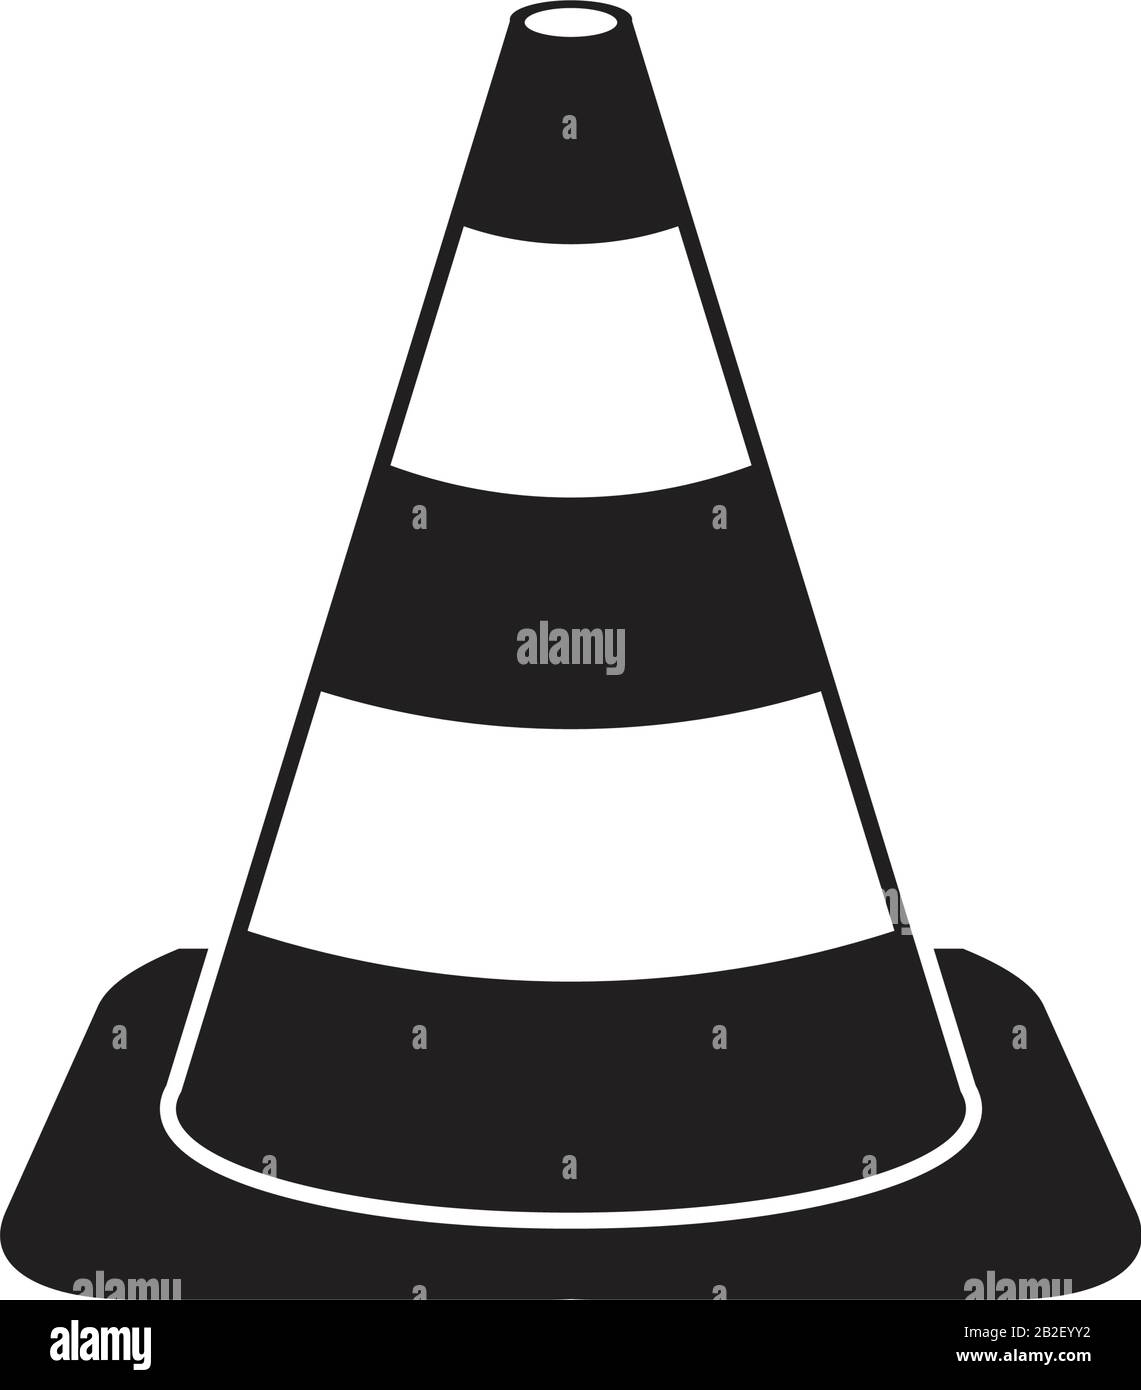 Modèle d'icône de cône de trafic couleur noire modifiable. Icône de cône de trafic illustration vectorielle plate pour la conception graphique et Web. Illustration de Vecteur